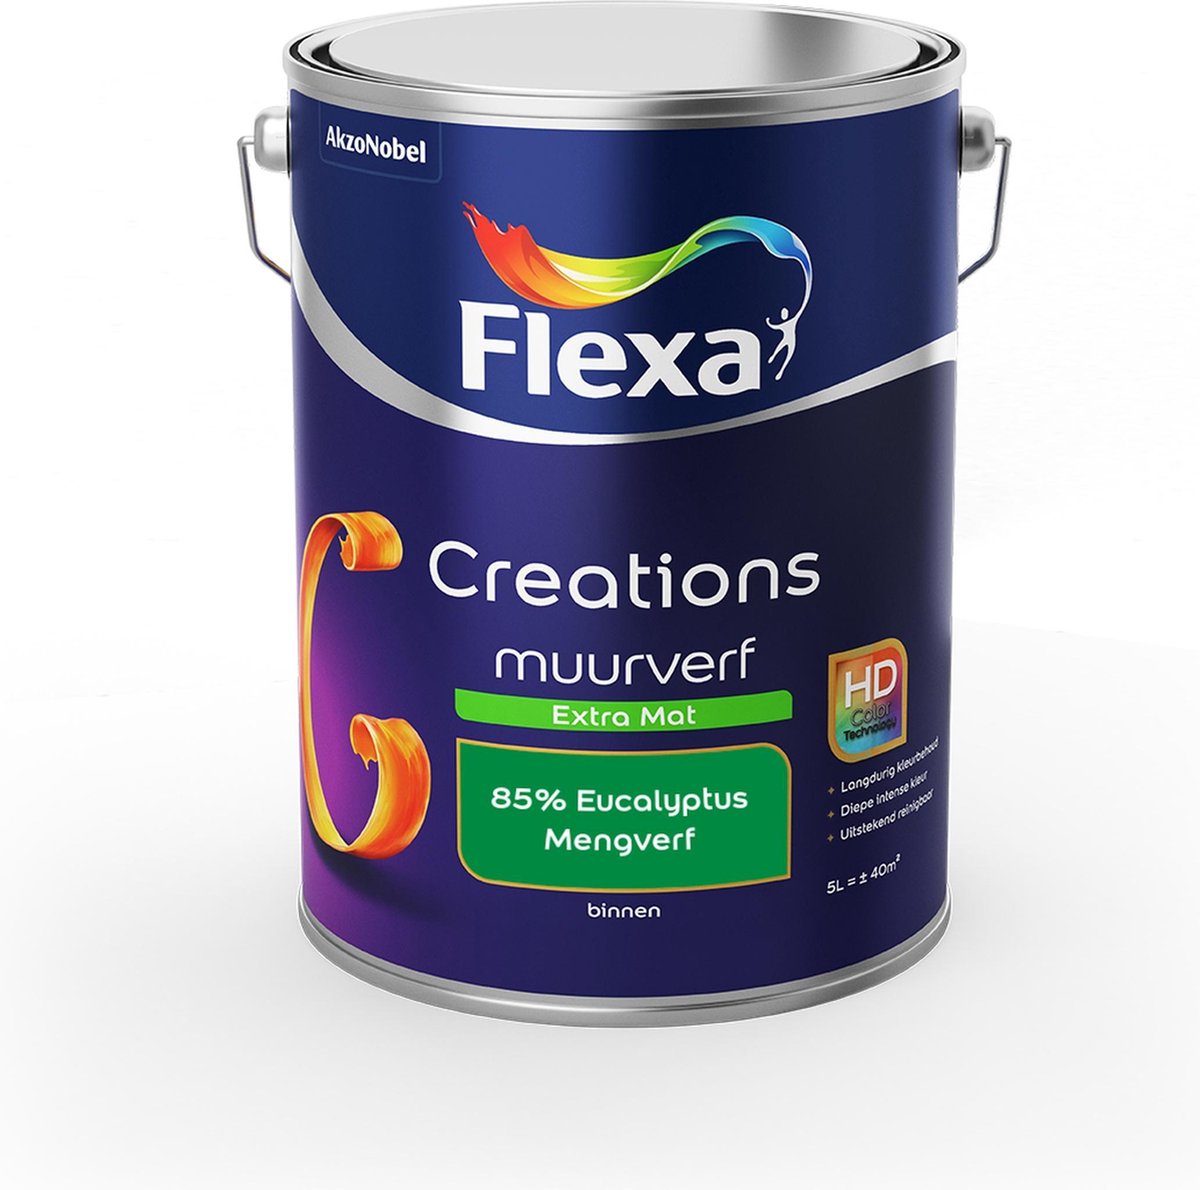 Flexa Creations Muurverf - Extra Mat - Mengkleuren Collectie - 85% Eucalyptus - 5 liter